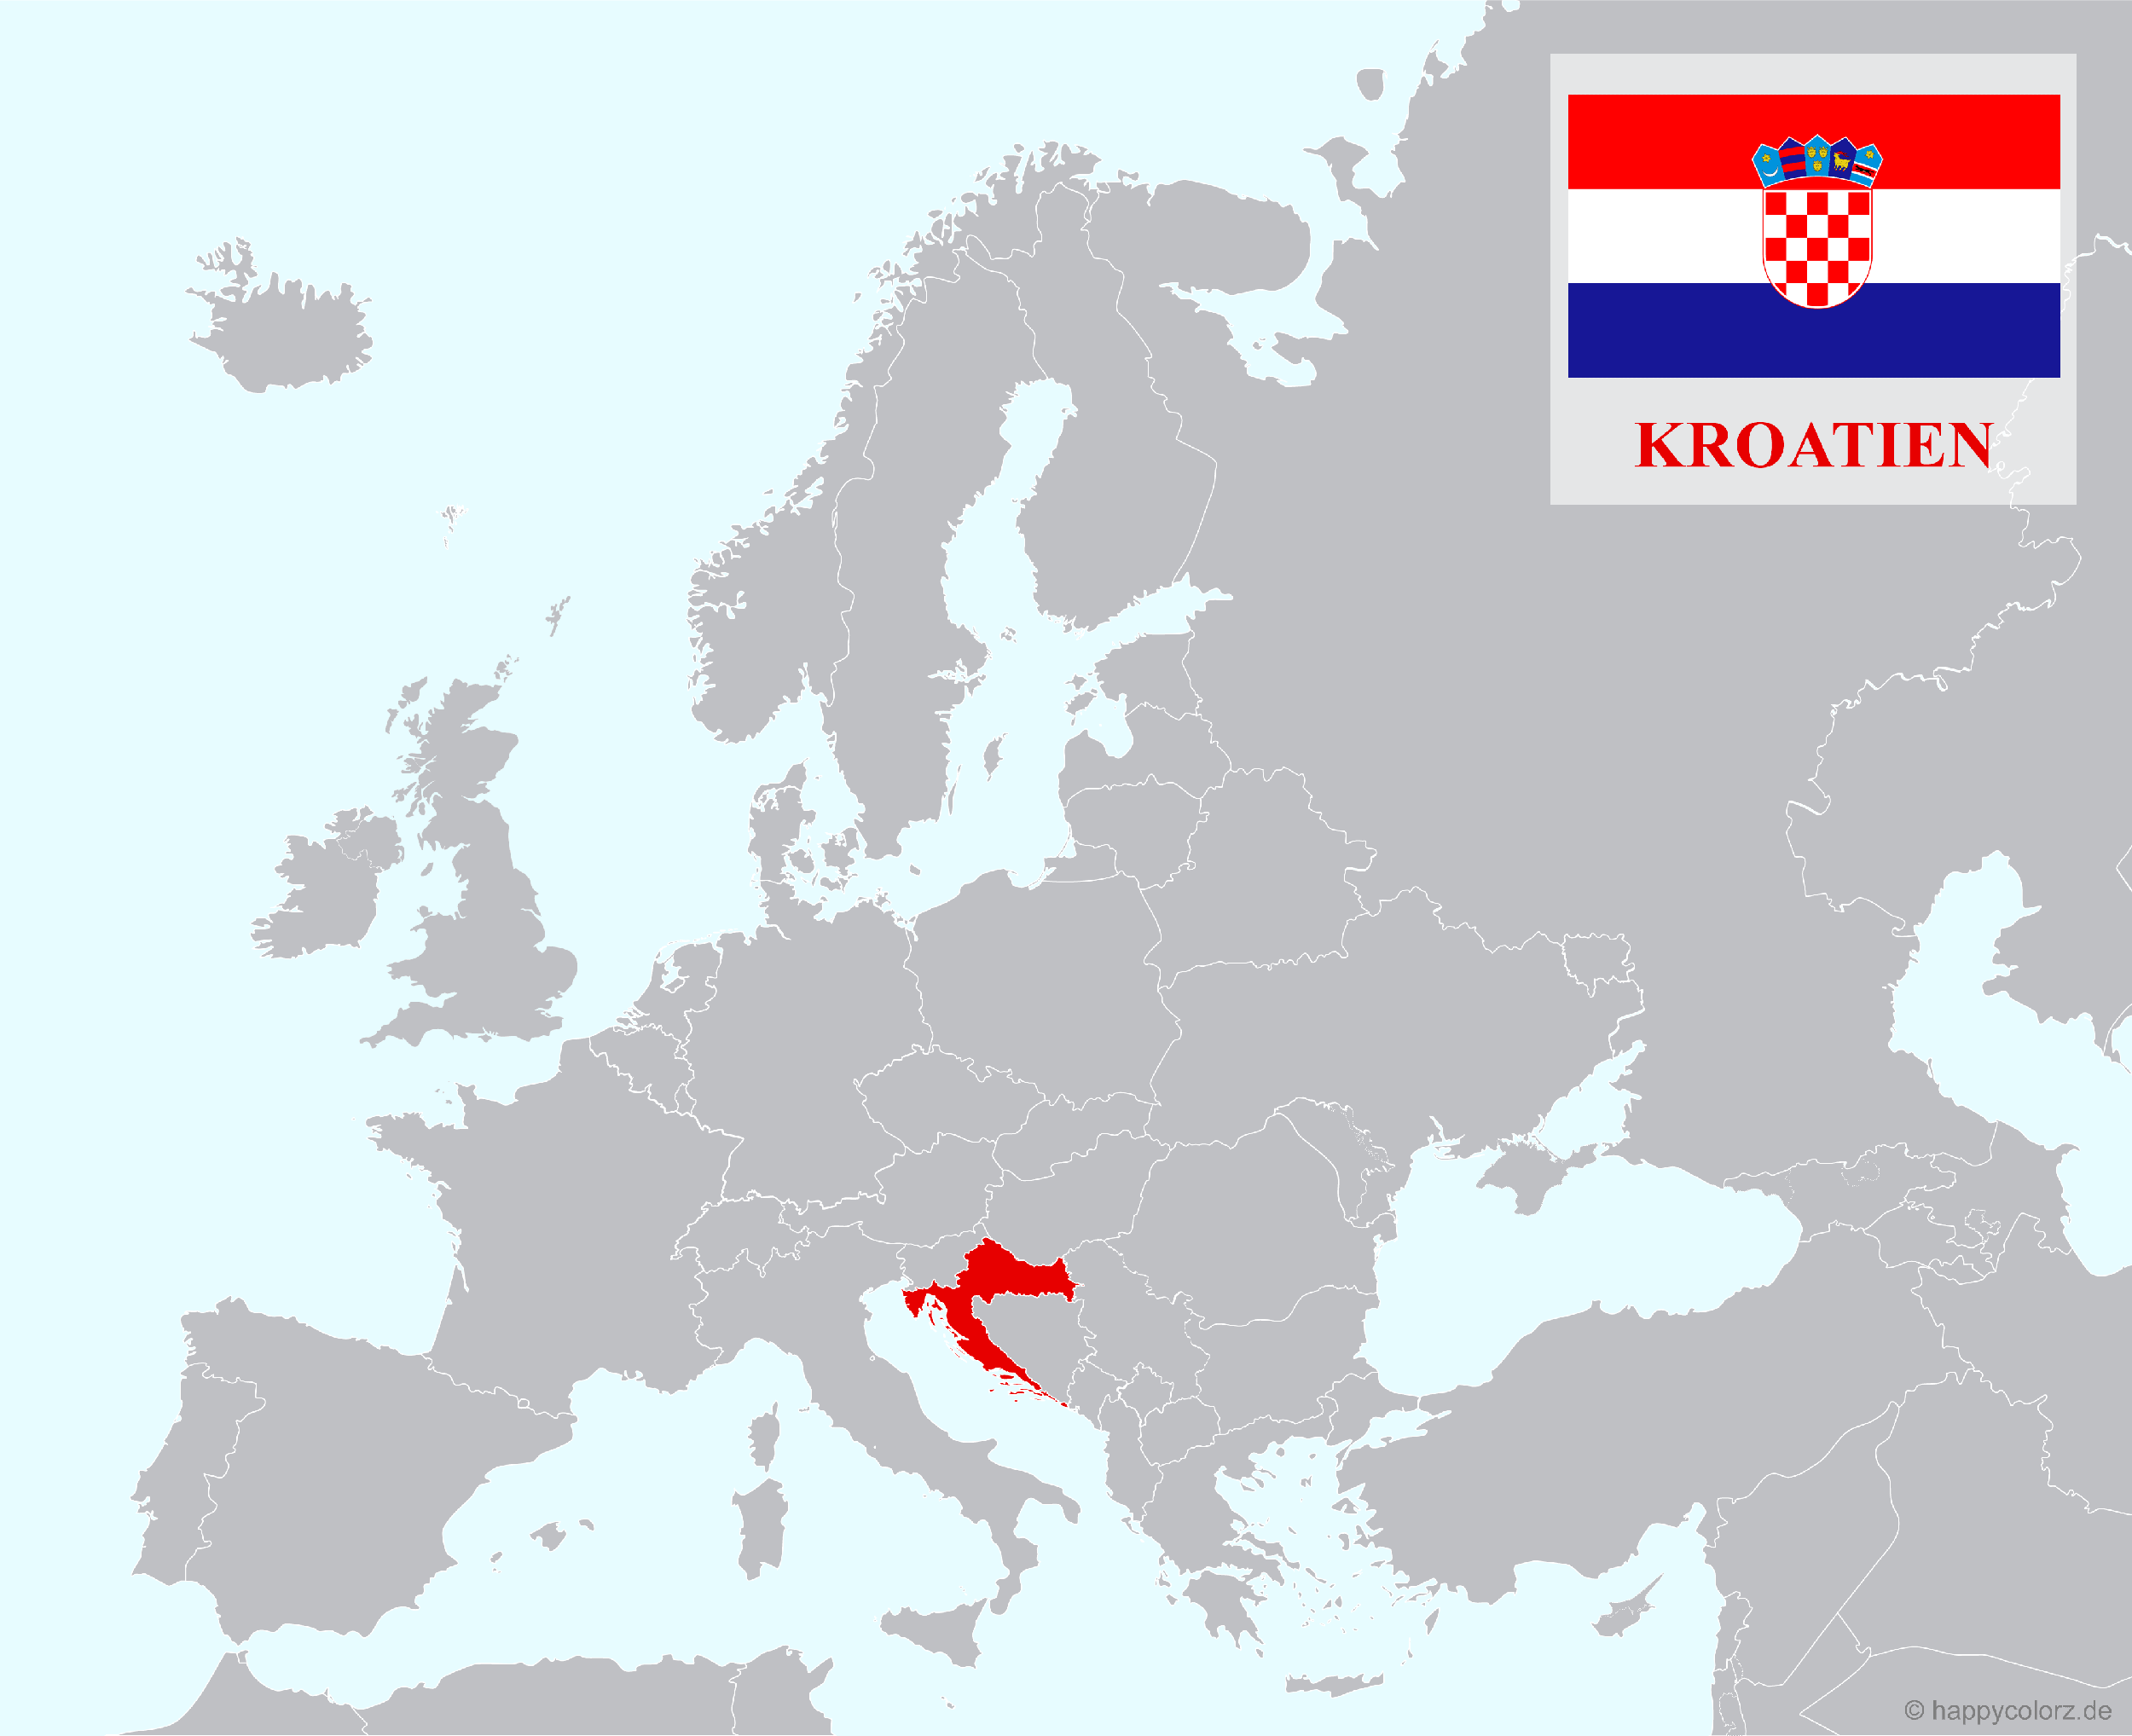 Europakarte mit Kroatien als hervorgehobenes Land